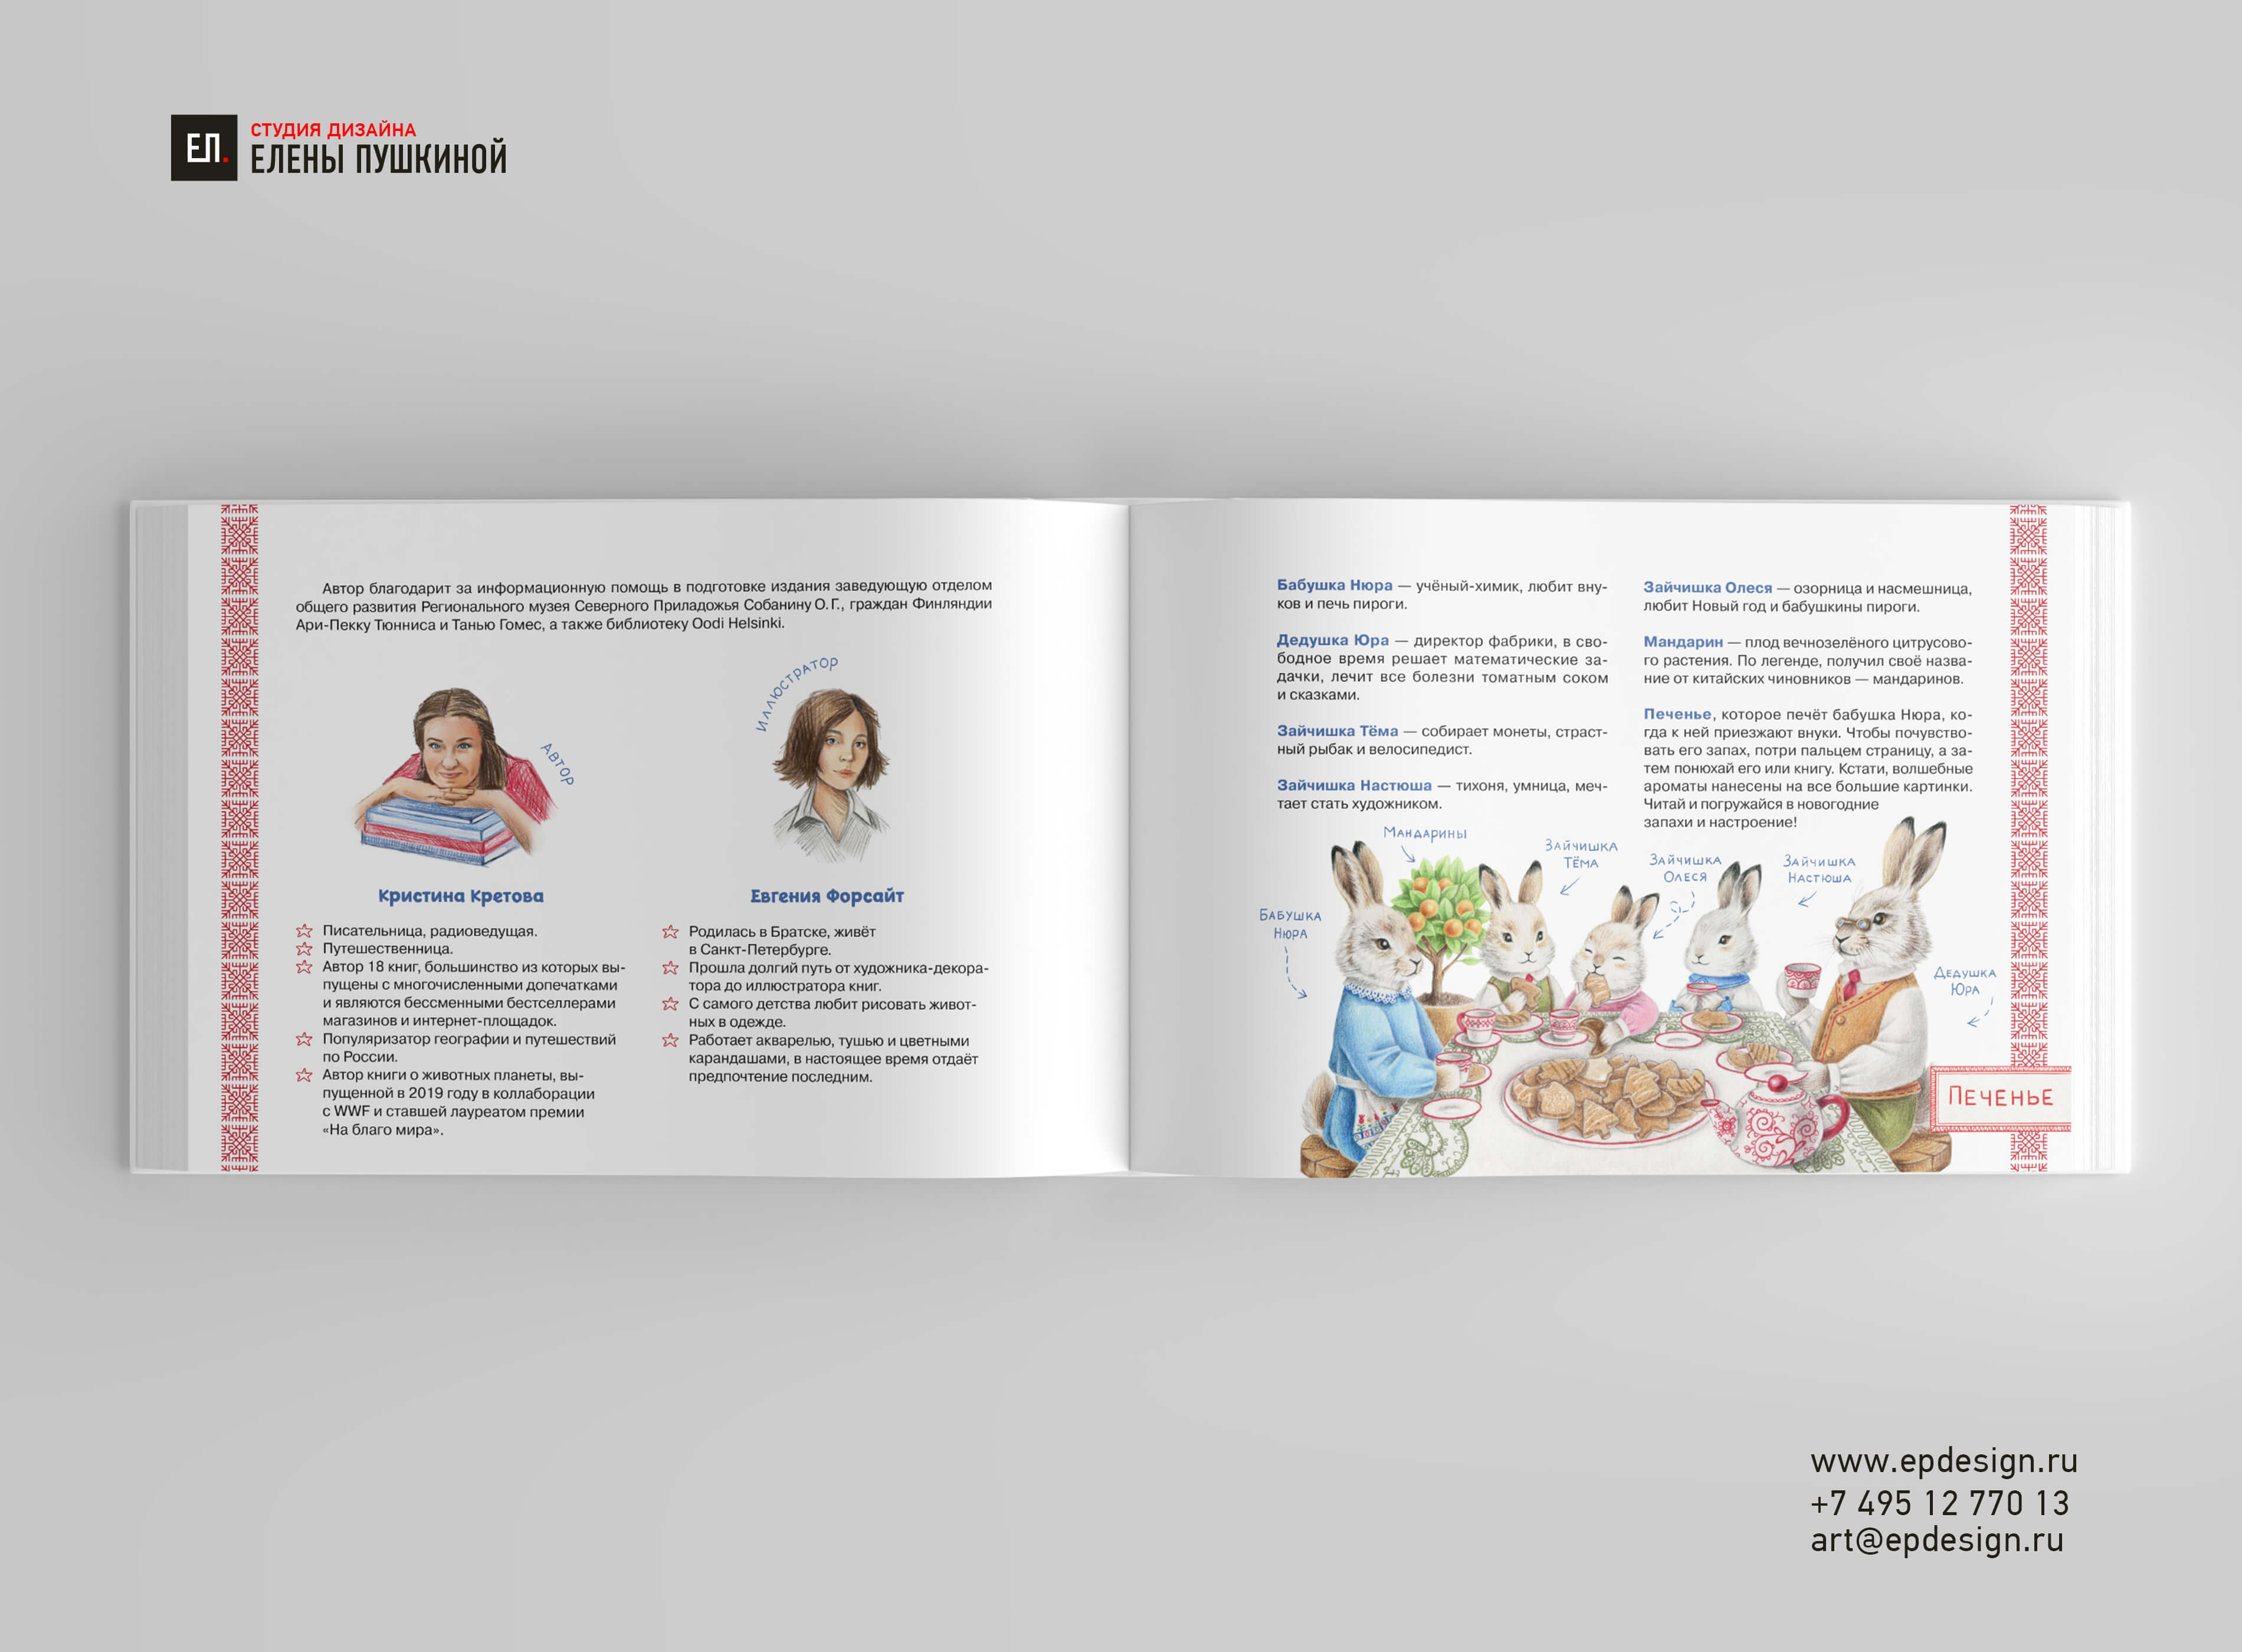 Книга для детей «Новогоднее путешествие зайчат» — разработка дизайна книги, вёрстка и подготовка к печати Создание книг Портфолио